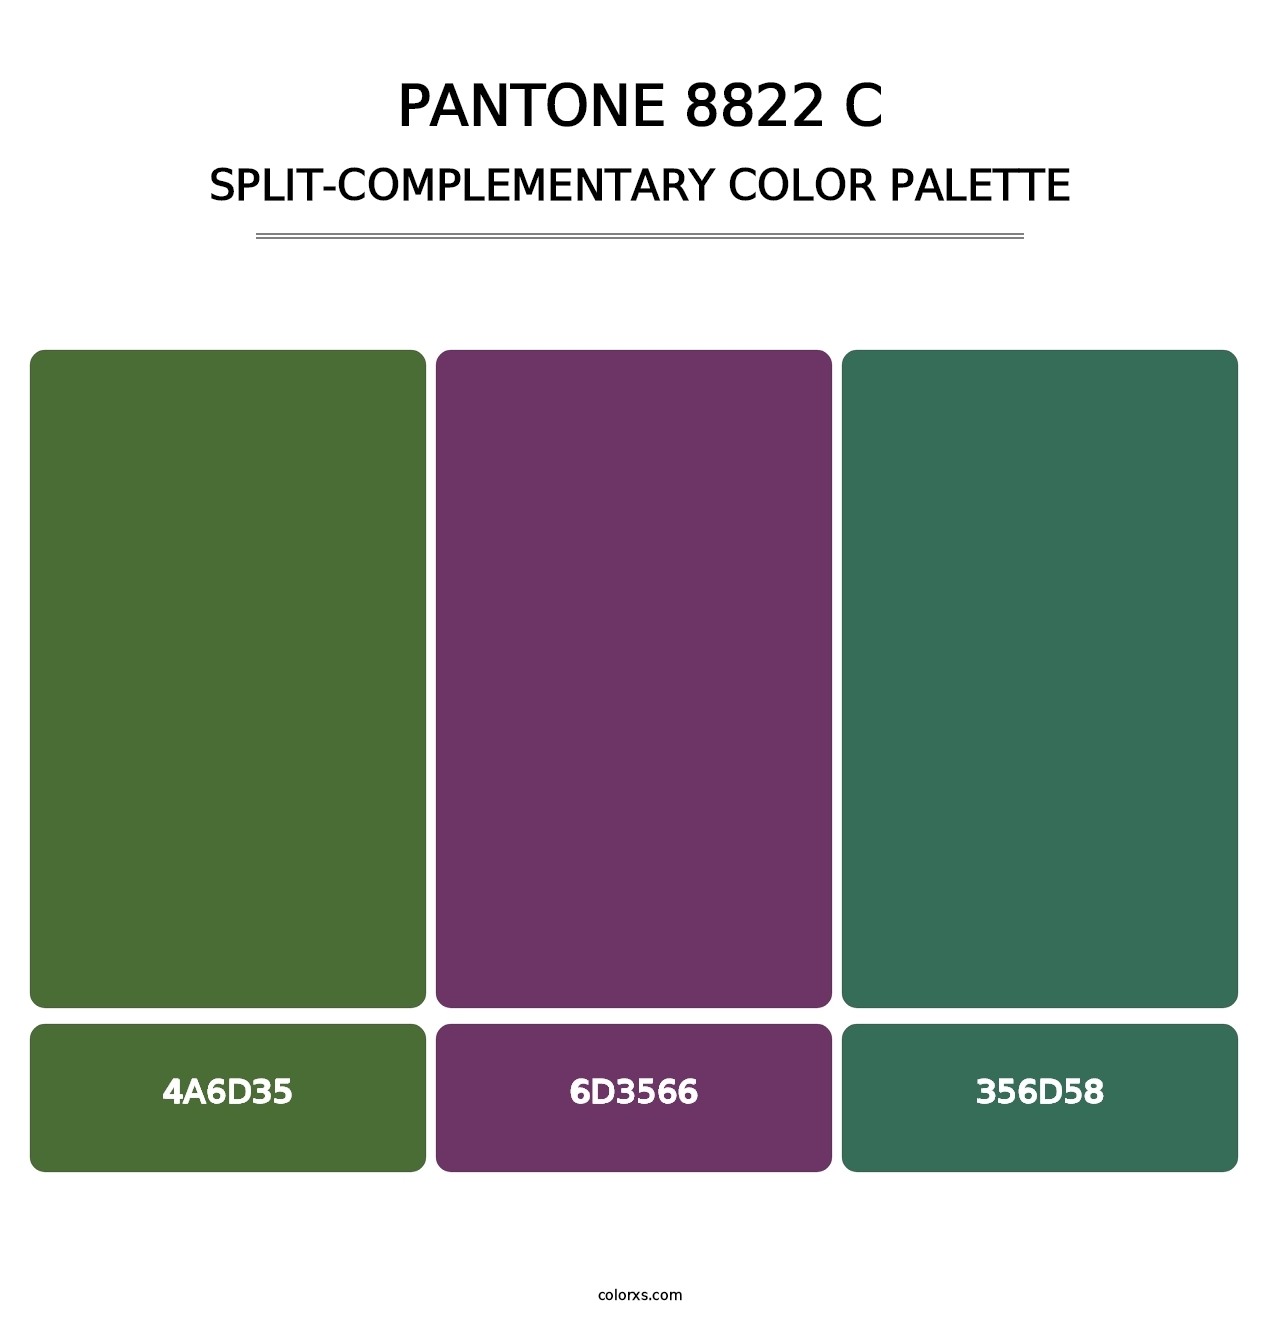 PANTONE 8822 C - Split-Complementary Color Palette